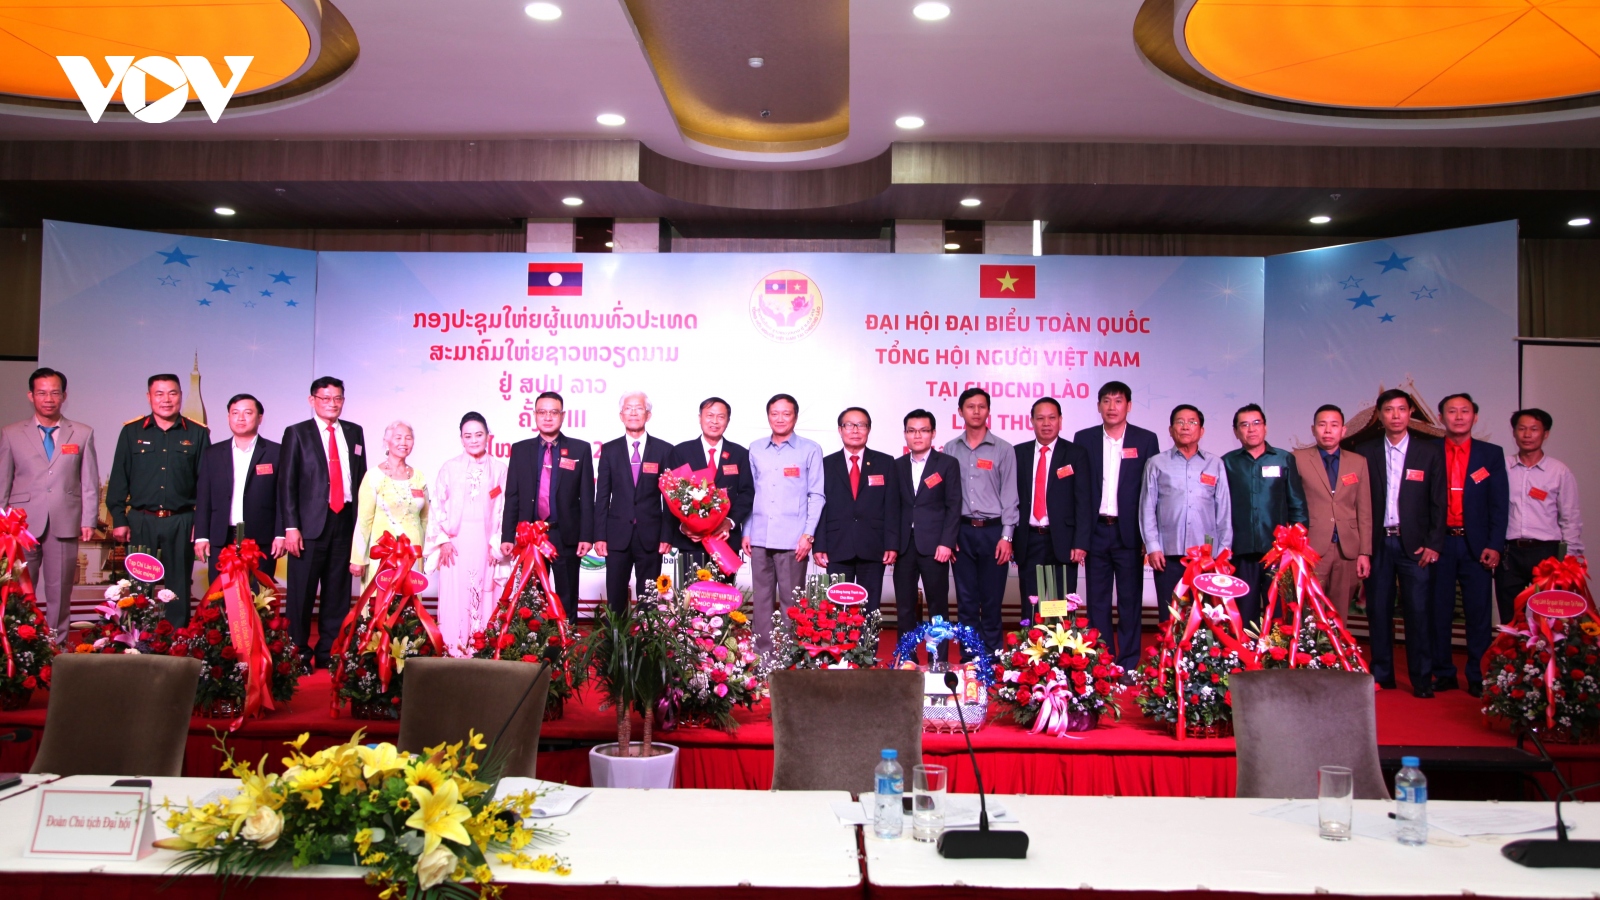 Tổng hội người Việt Nam tại Lào: Đoàn kết, dân chủ, nêu cao tinh thần trách nhiệm